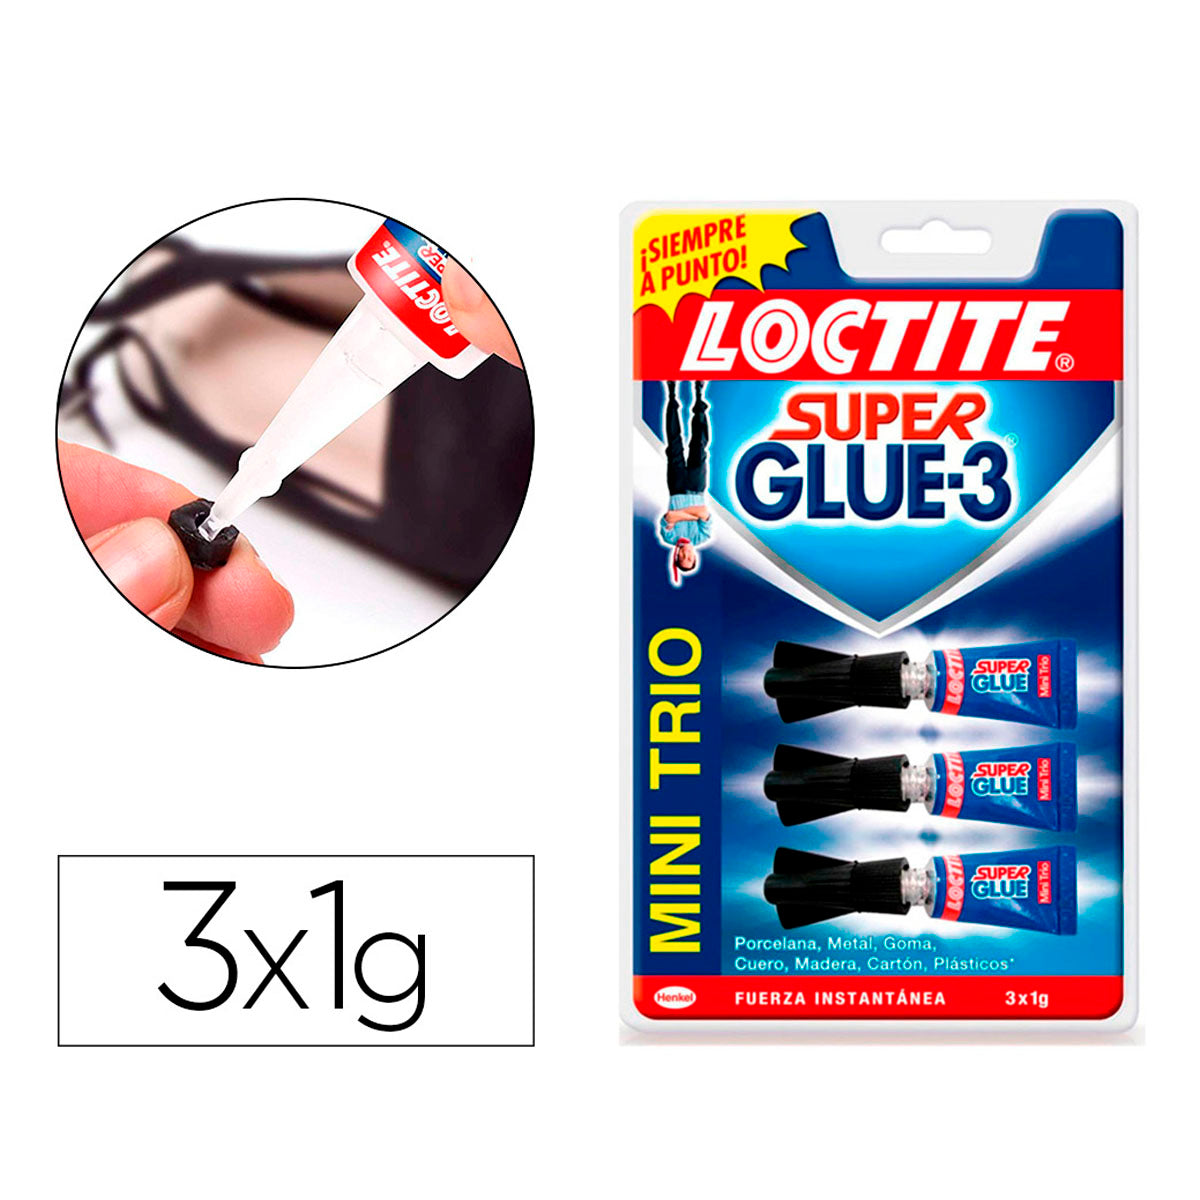 Loctite 3 Pack Original Mini Trio Super Glue 1g